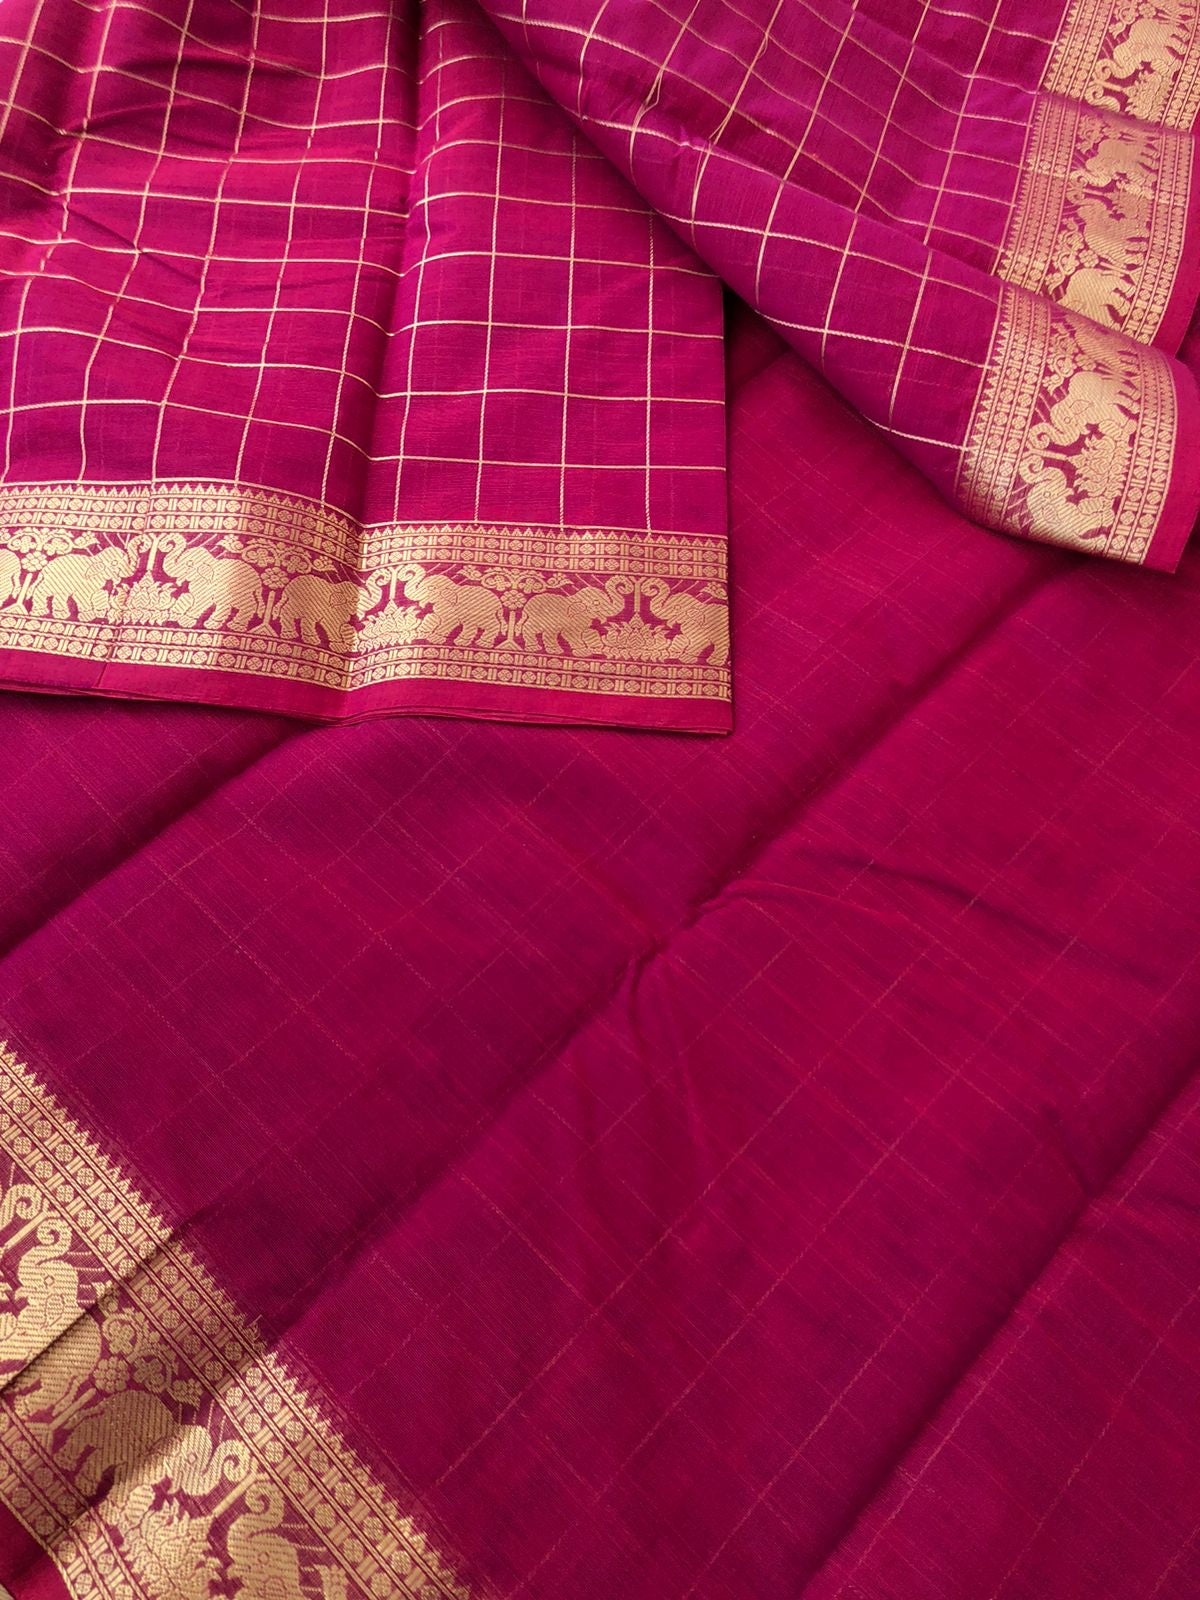 Mangalavastaram - Zari Touched - red mixed deep pink jodi elephants woven muthukattam